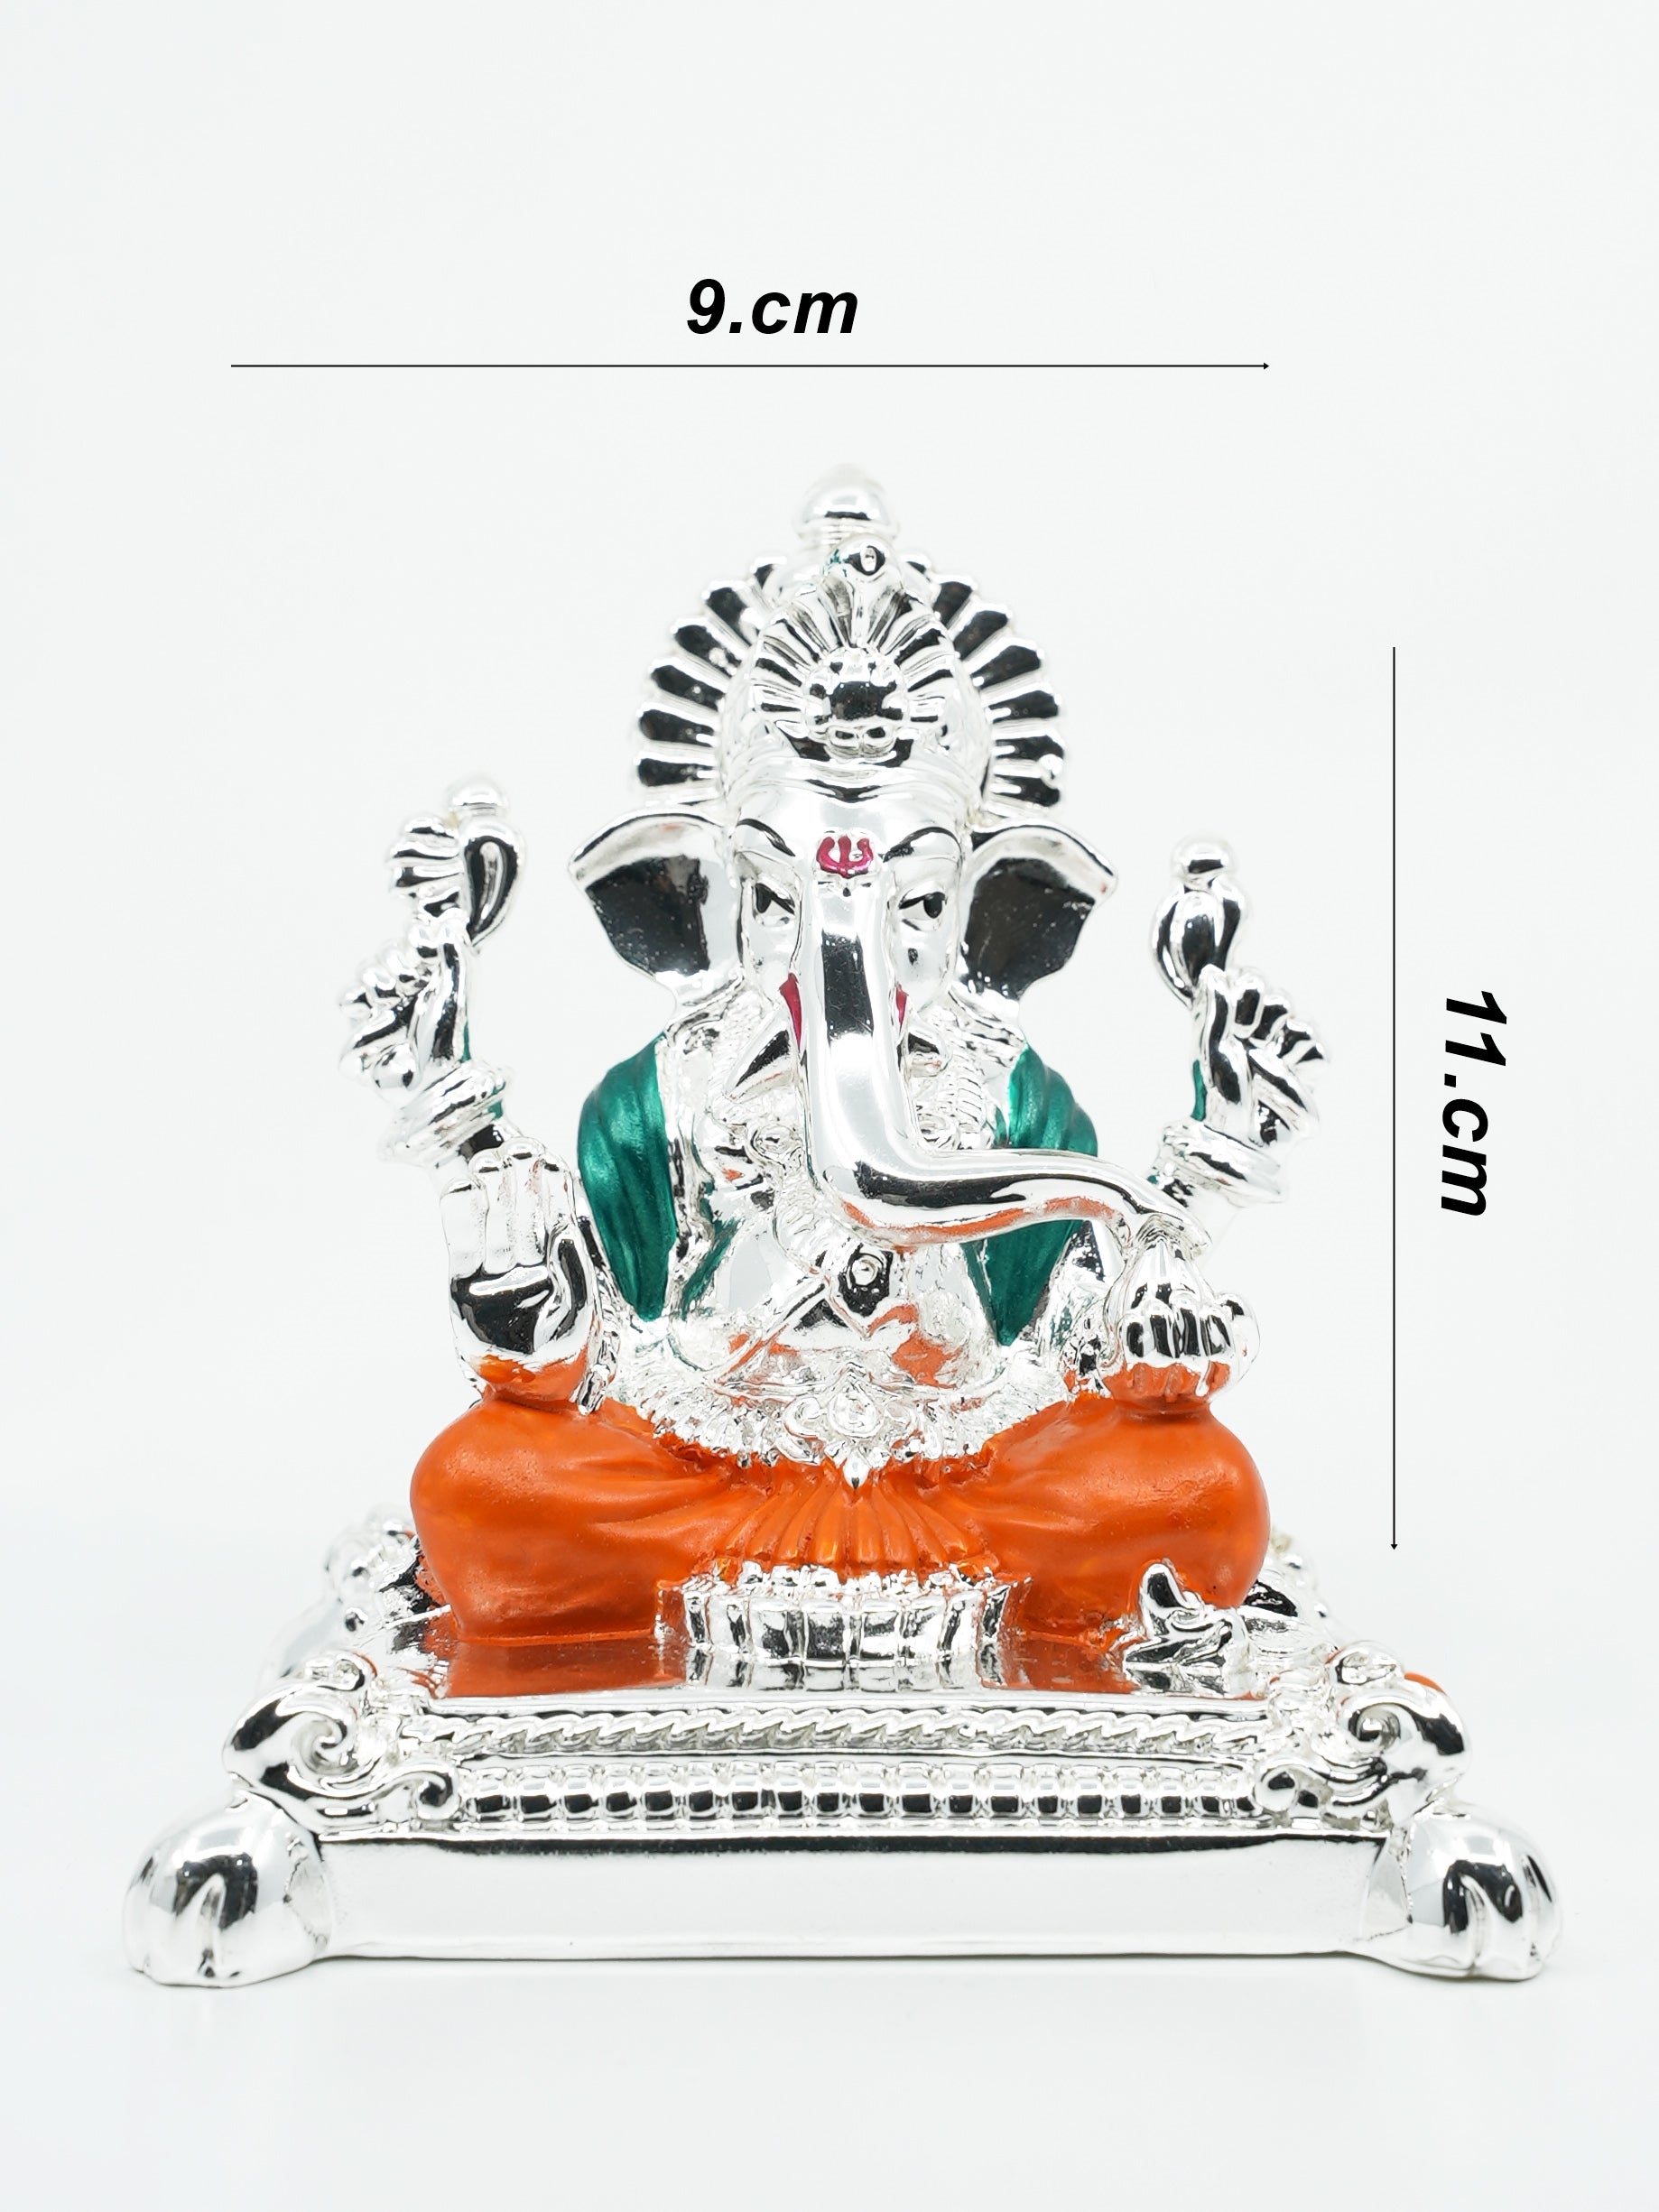 Ganesha Gold Plated charaspat Marble idol 10cm Height 10193N